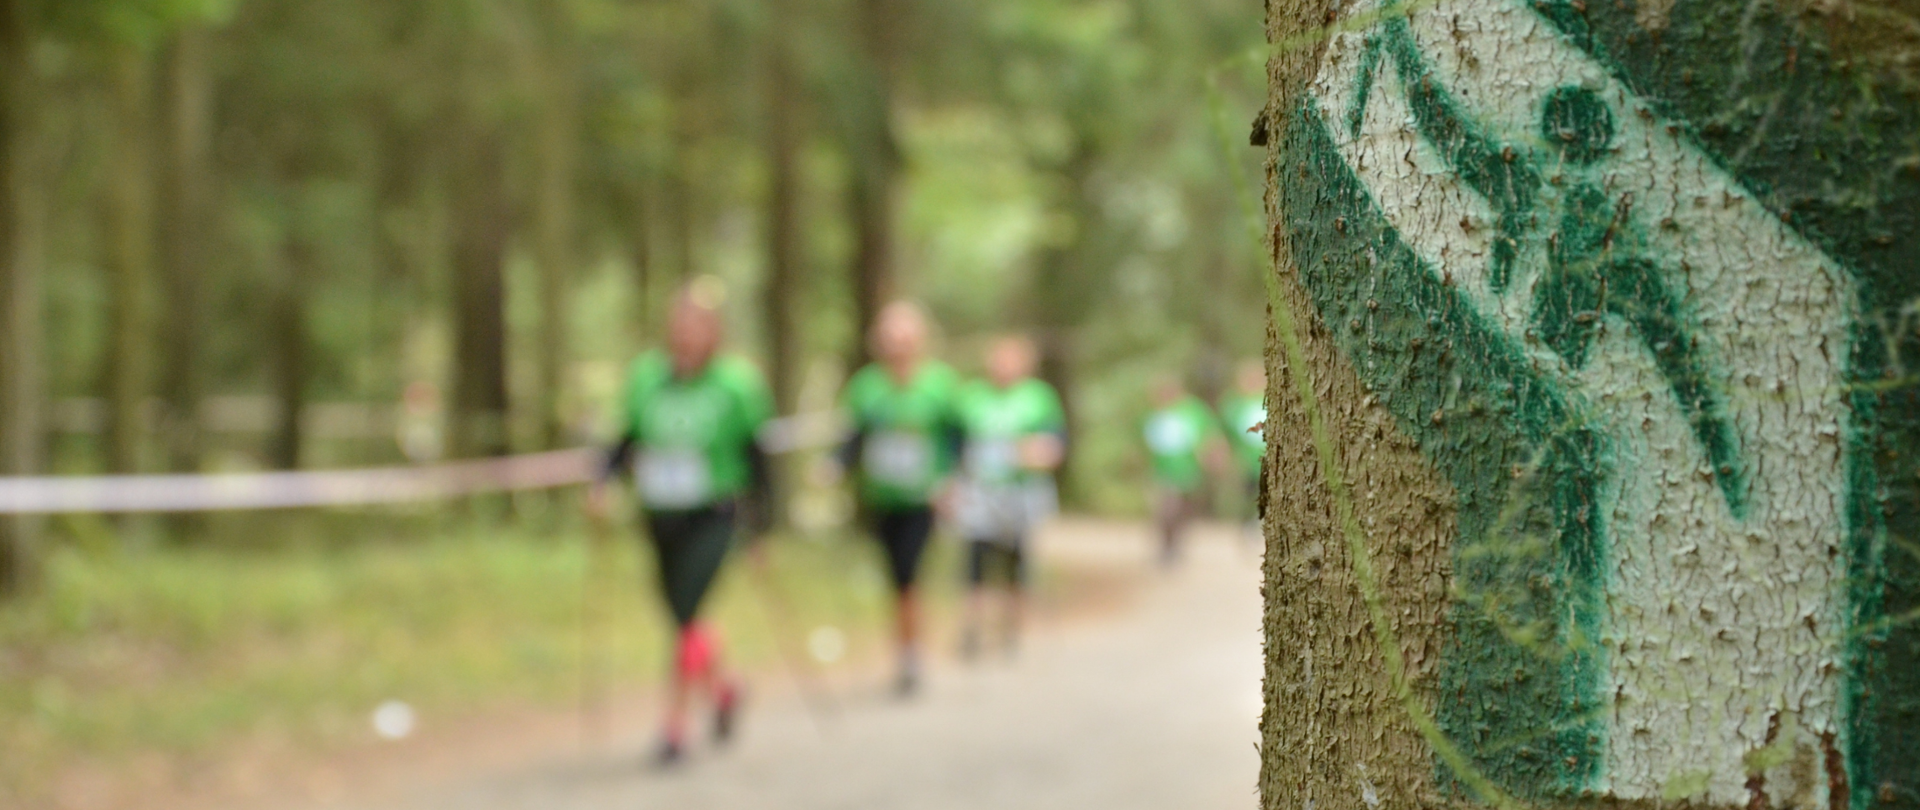 Uczestnicy Pucharu w tle - na pierwszym planie zielone oznakowanie trasy nordic walking